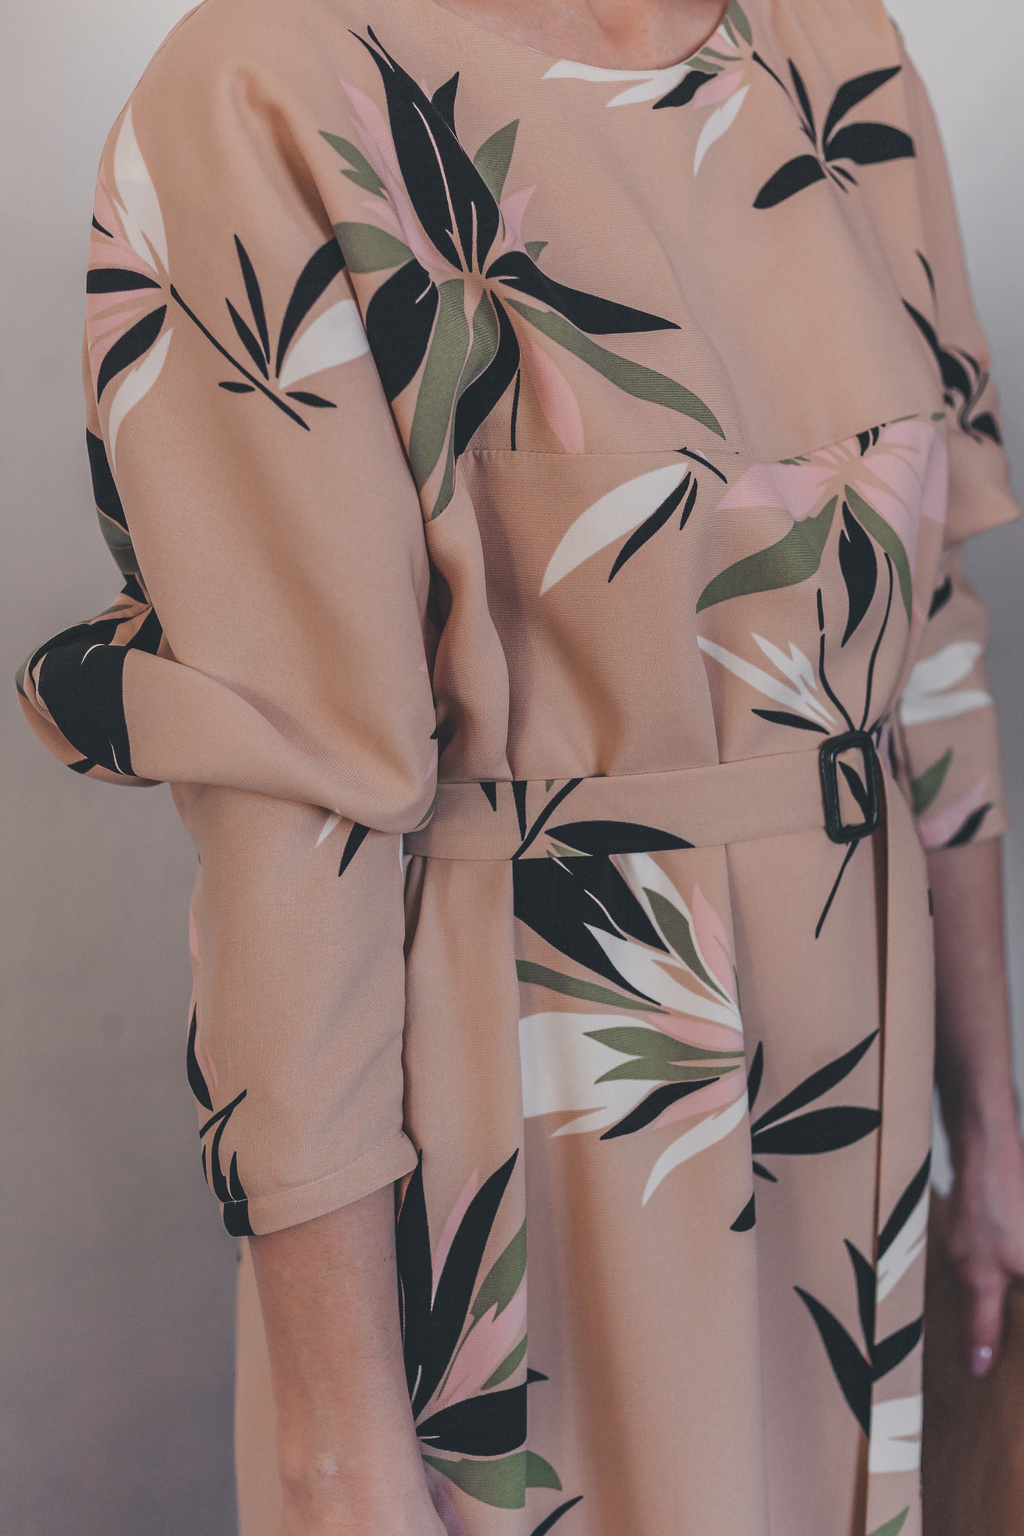 Платье «Мирра» цвета персиково-цветочная пастэль, размер 42-44